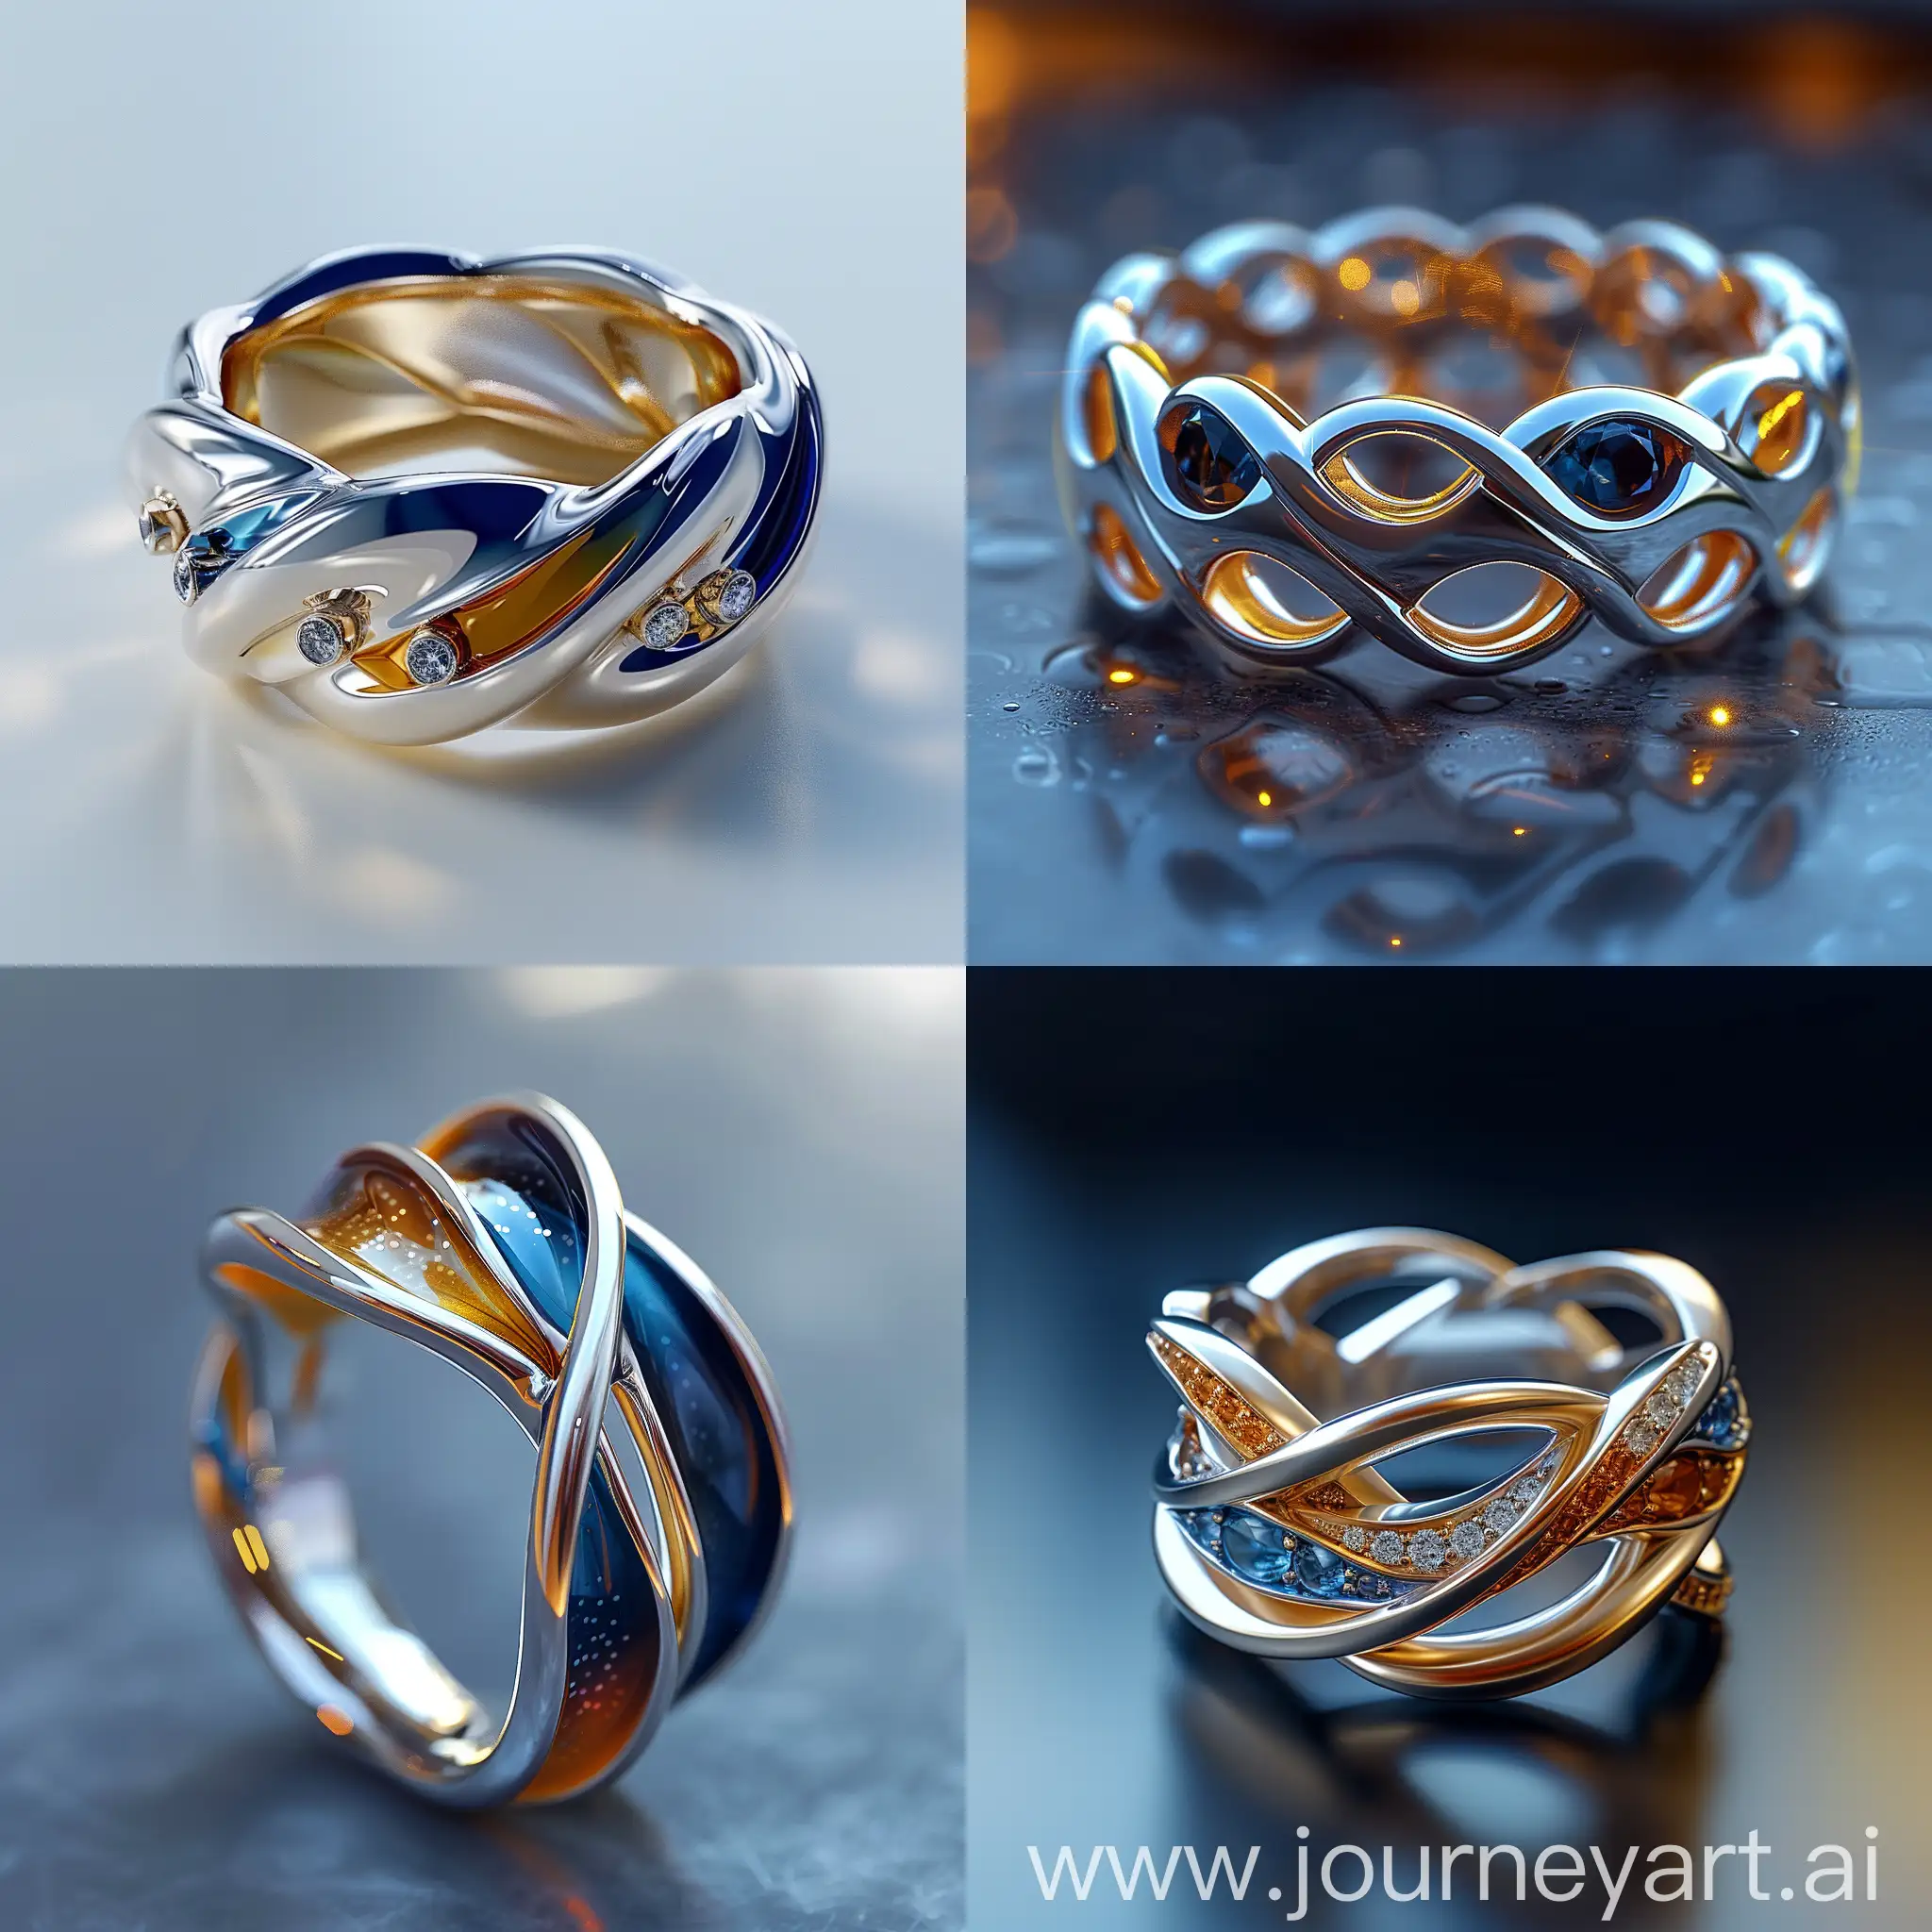 8K, V-ray, realism, кольцо мужское, кольца из множества переплетающихся линий и форм. Синие тона могут создавать глубину и покой, белый цвет добавит свет и пространство, жёлтый же будет символизировать искру и энергию. Кольцо символ баланса и целостности, --s 500 